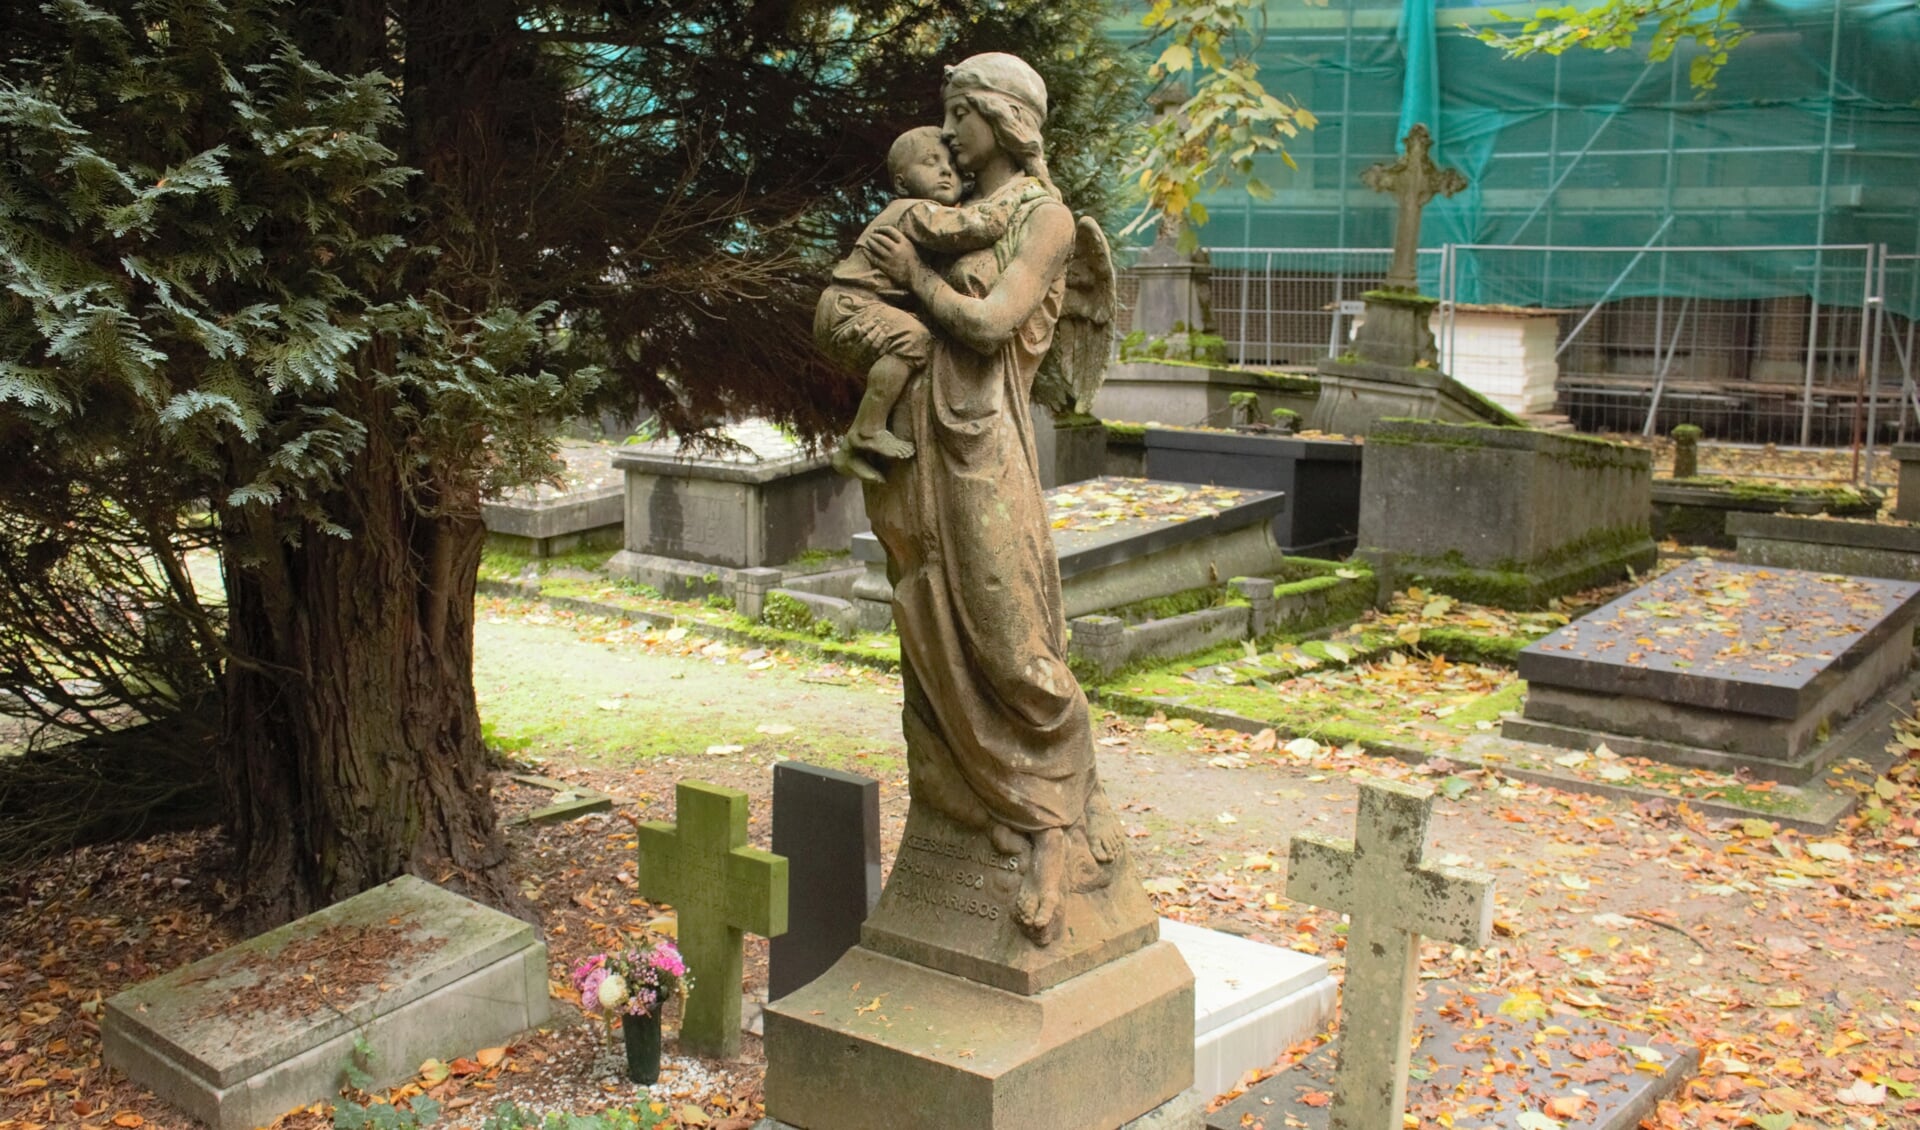 Het grafmonument van de engel met het slapende kindje is het graf van Keesje Daniëls. Het monument is gemaakt door Louis Vreugde.